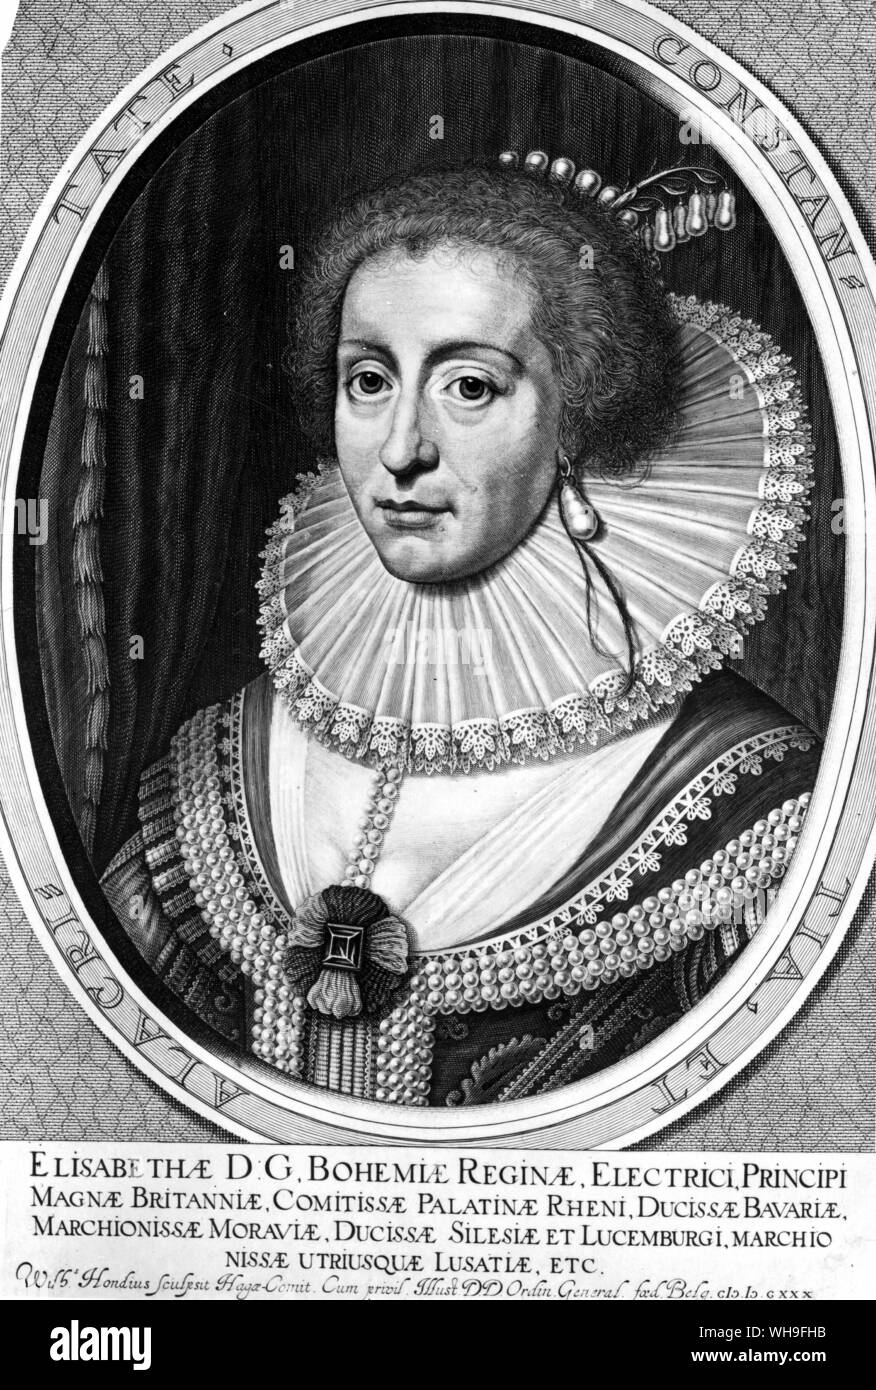 Elisabeth de Bohême (1596-1662), la reine d'hiver par William Hondius. Elle était la fille de Jacques VI d'Écosse. Banque D'Images